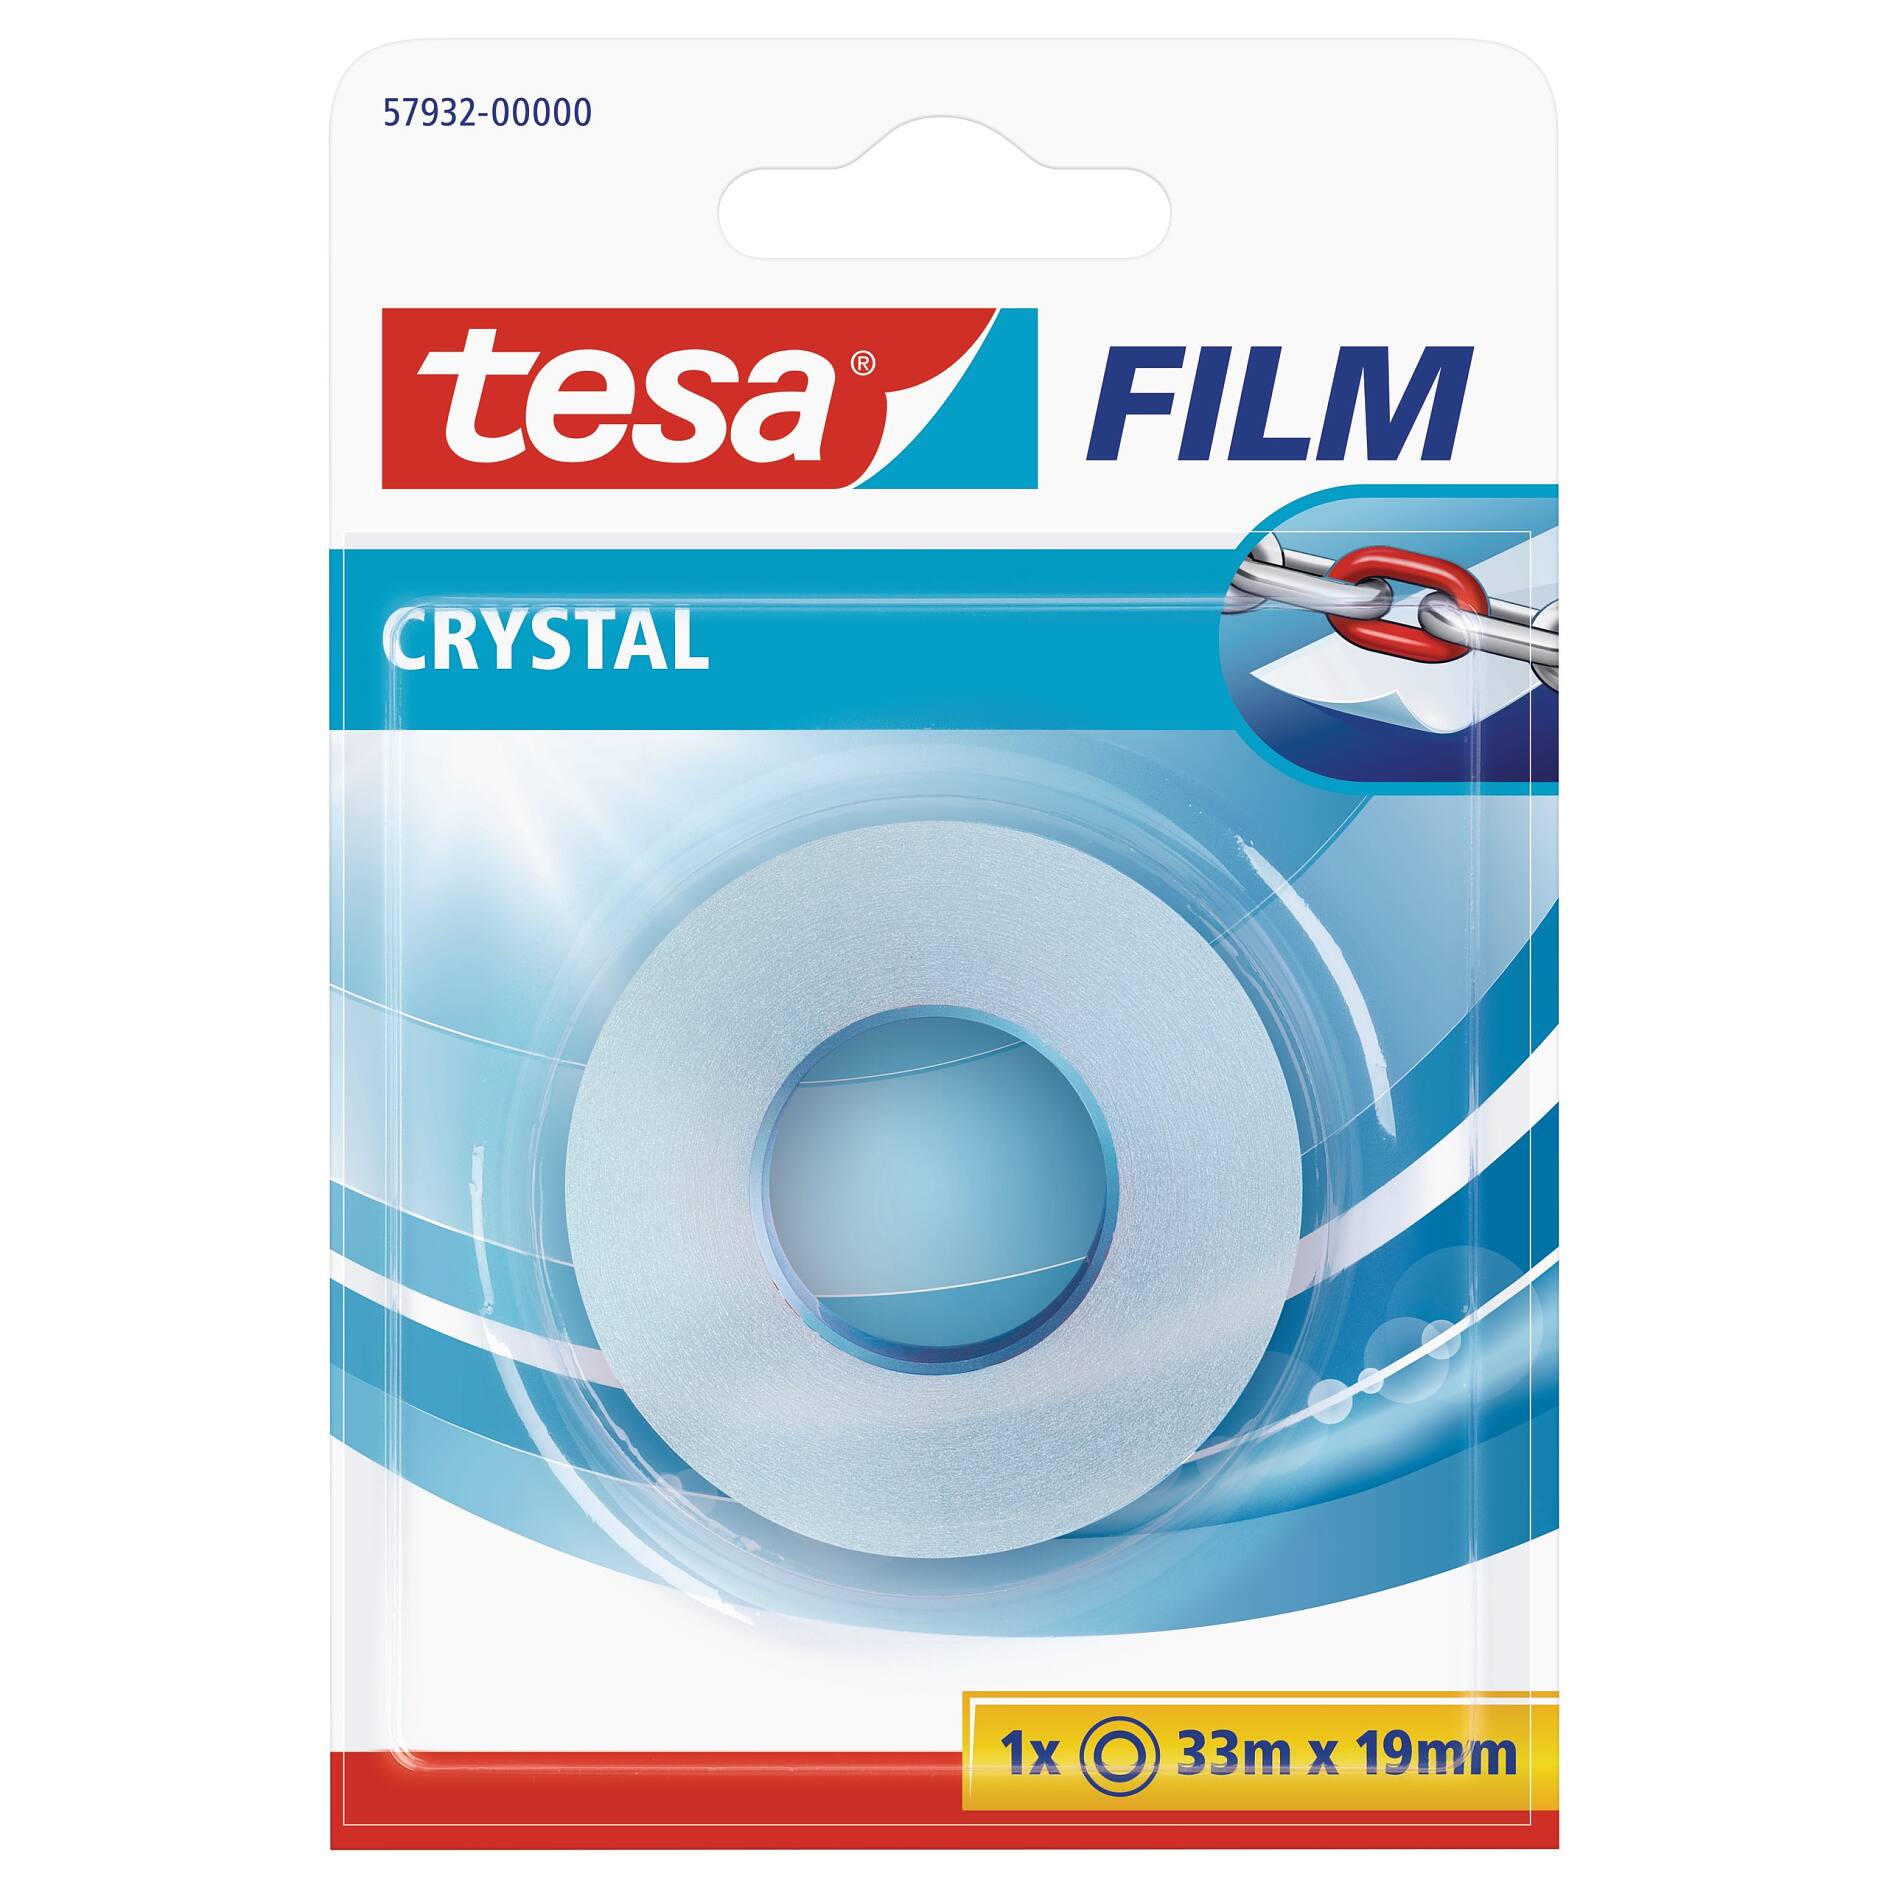 Tesa film, Notes adhésives fluo, 19mmx10m, jaune et rose, 53930-00000-00